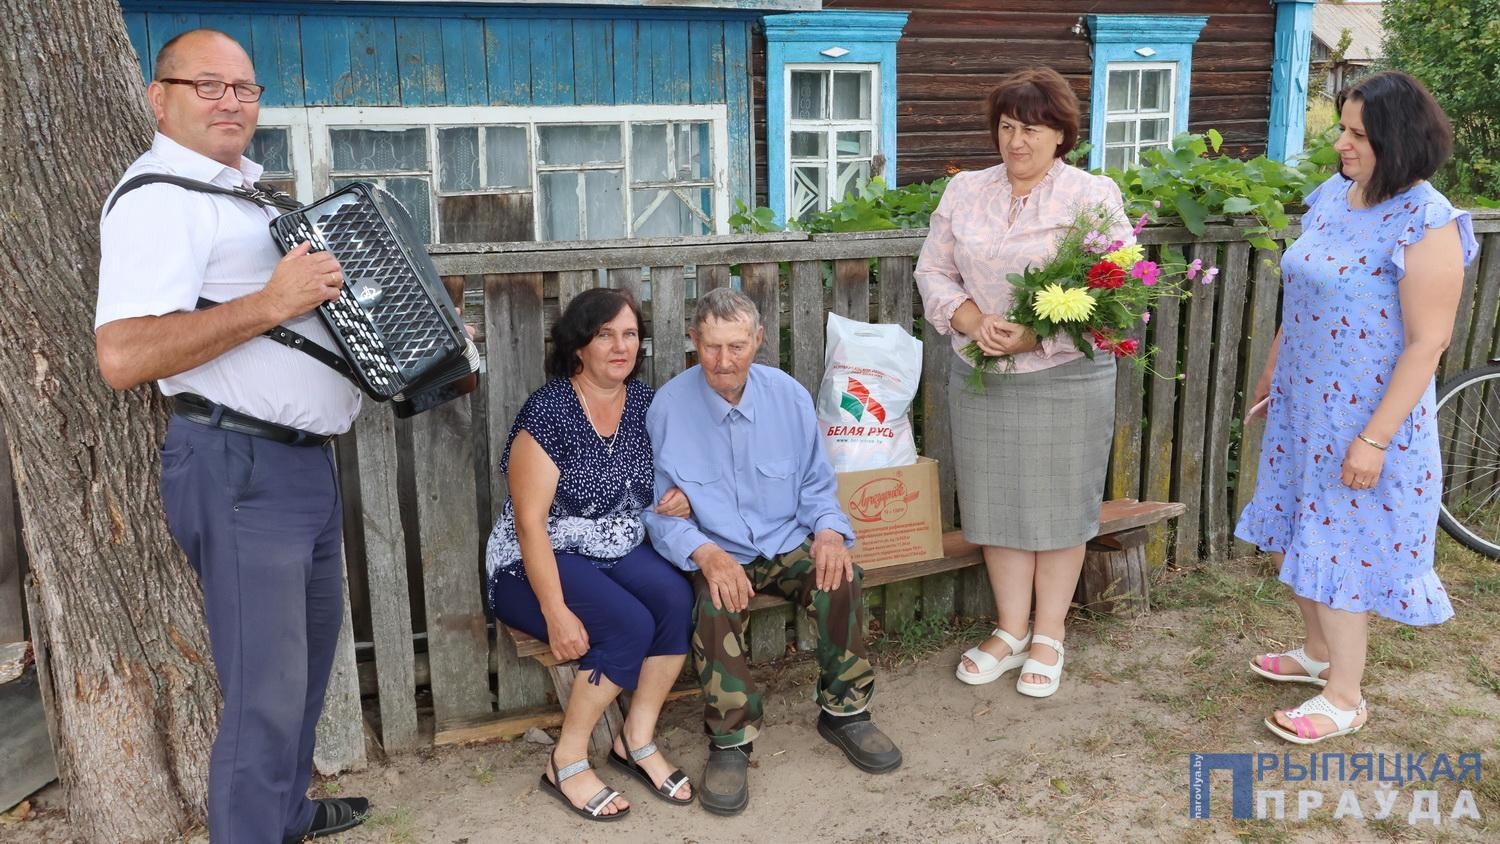 <strong>95-летний юбилей отмечает Борис Стасевич Гаек из деревни Антонов </strong><strong></strong>